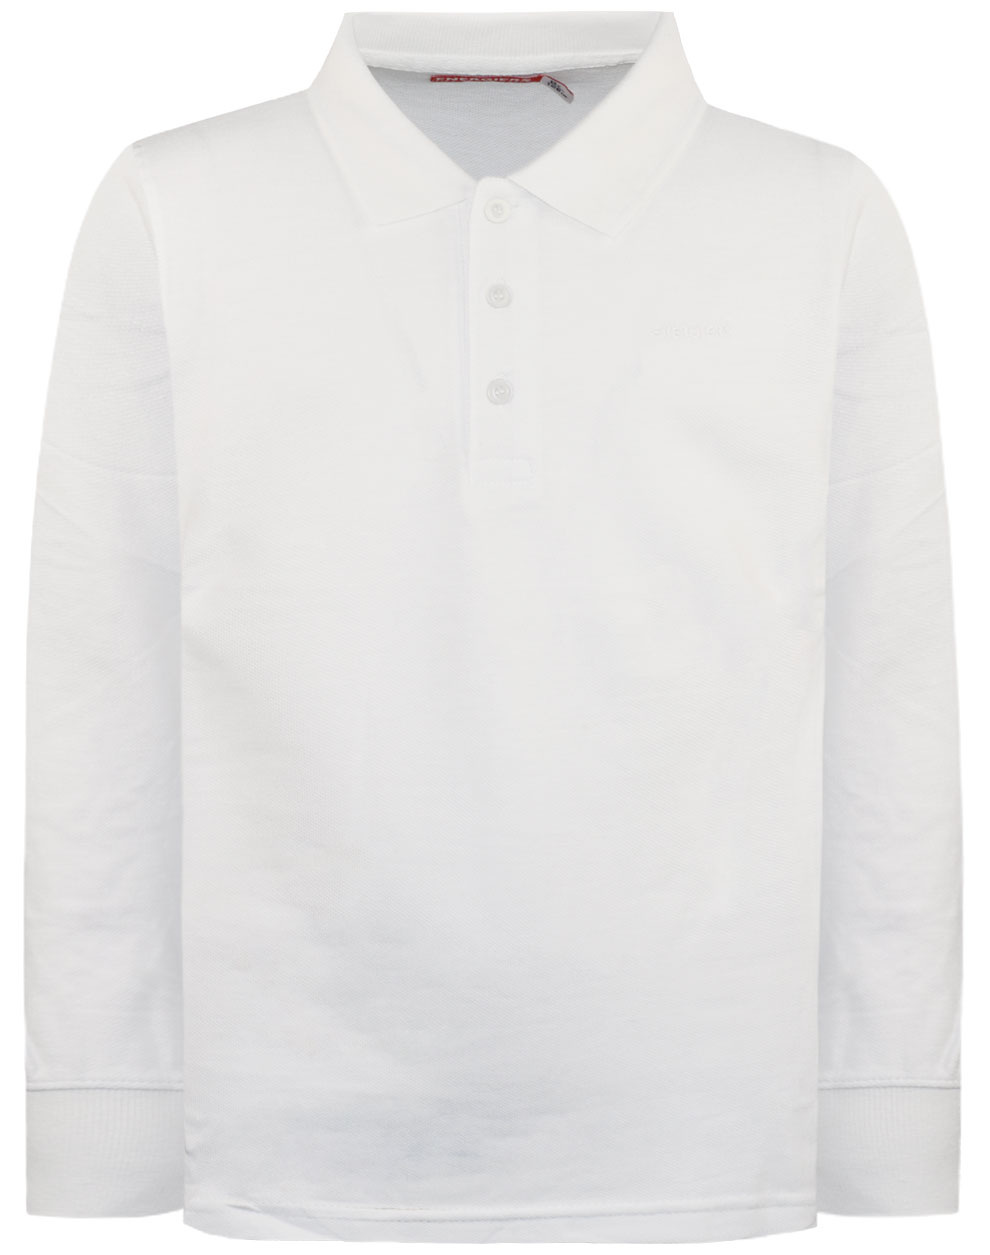 Βαμβακερή, πόλο μπλούζα Energiers Basic Line για αγόρι | ΛΕΥΚΟ ΑΓΟΡΙ 6-16>Μπλούζα